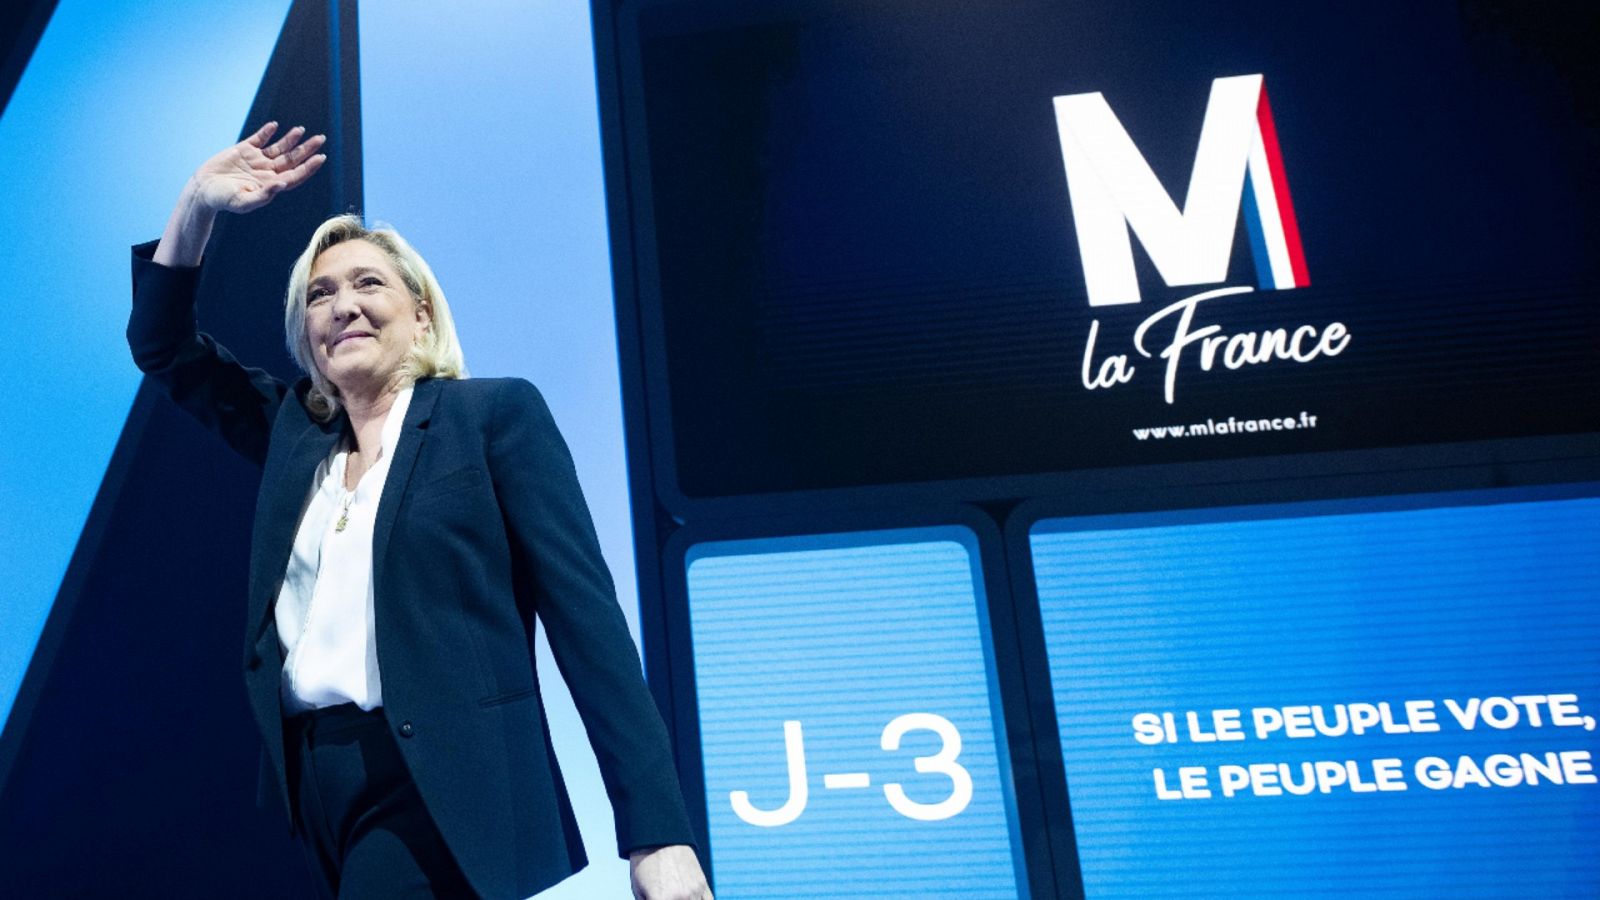 Una imagen de la candidata presidencial Marine Le Pen durante un acto electoral en Perpiñán, Francia, el 7 de abril de 2022.